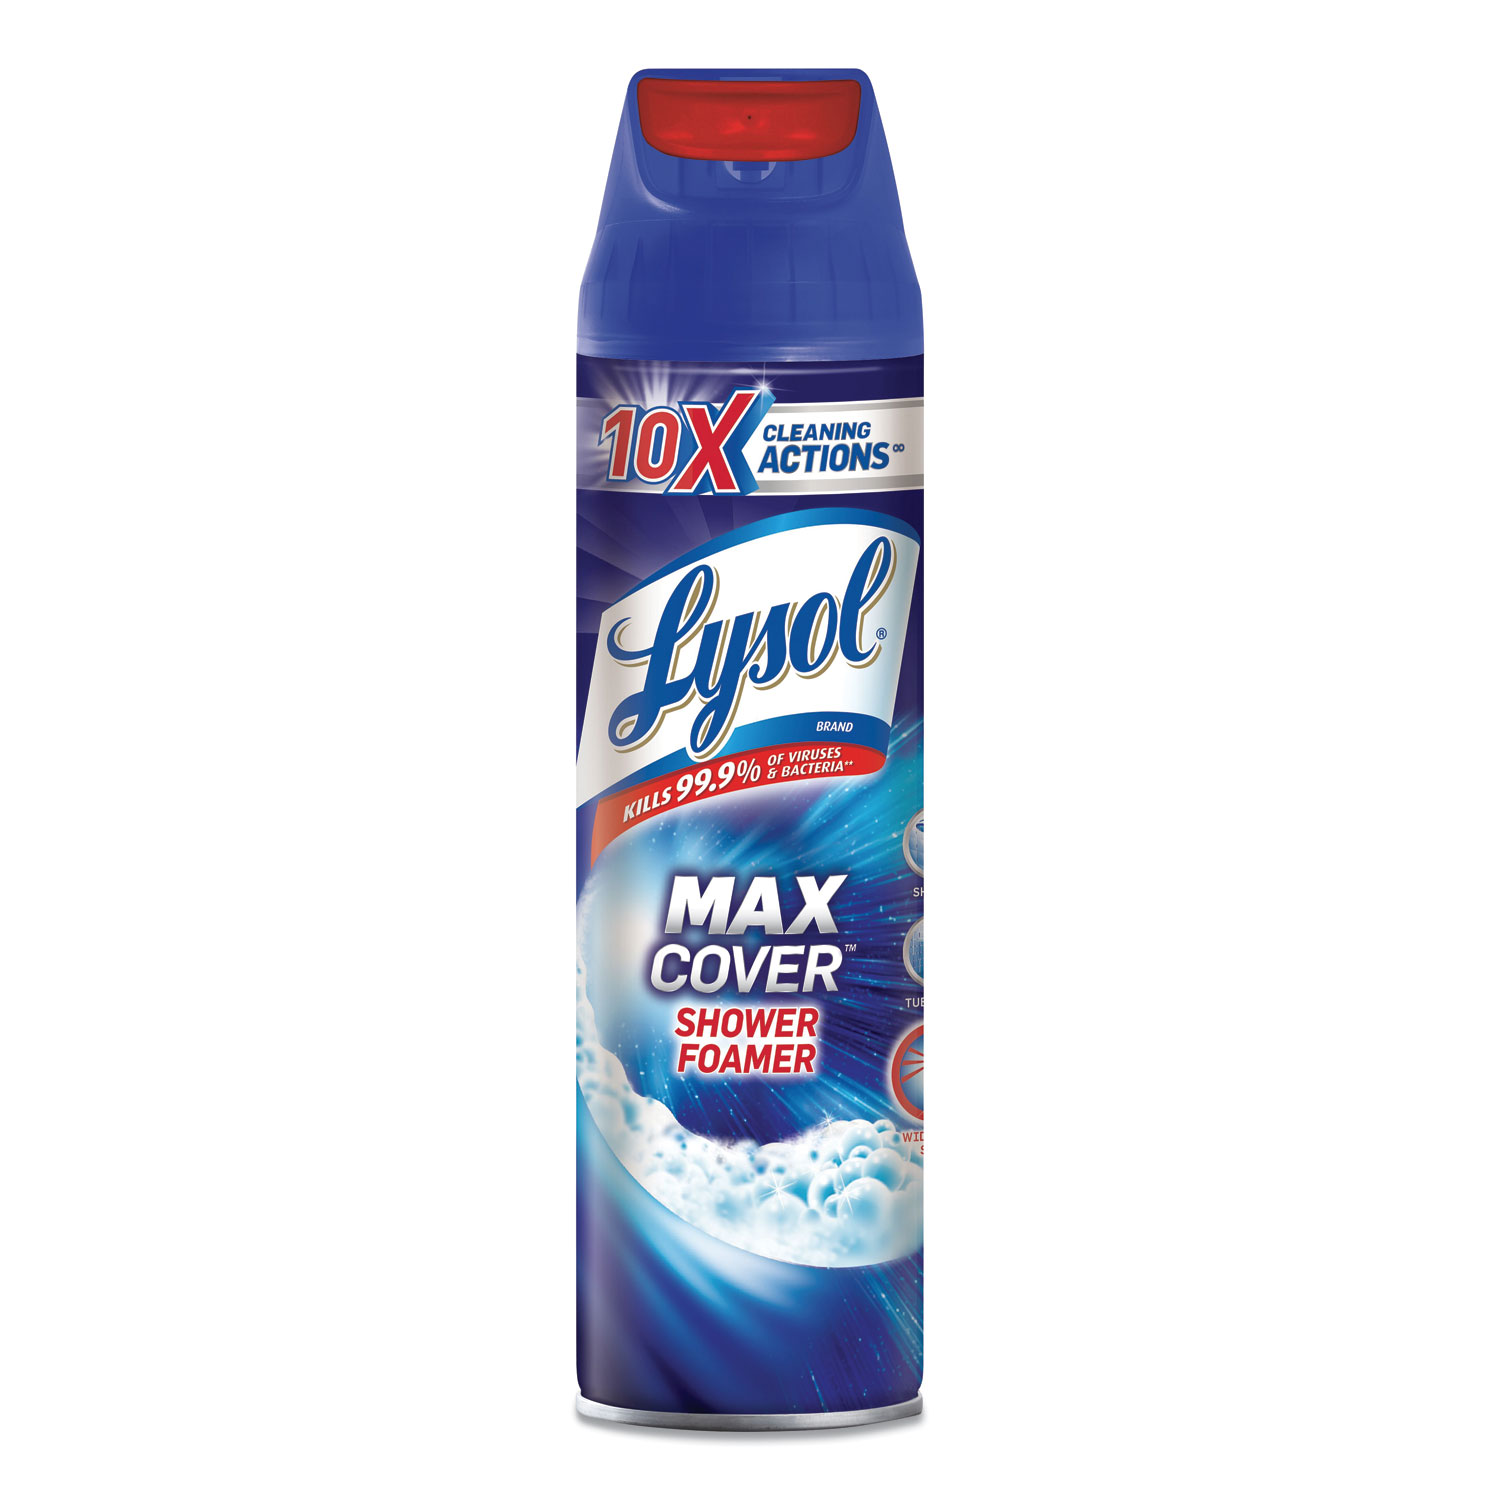  LYSOL Brand 19200-95026 Max Foamer Bathroom Cleaner, Fresh Scent, 19 oz Aerosol, 12/Carton (RAC95026) 